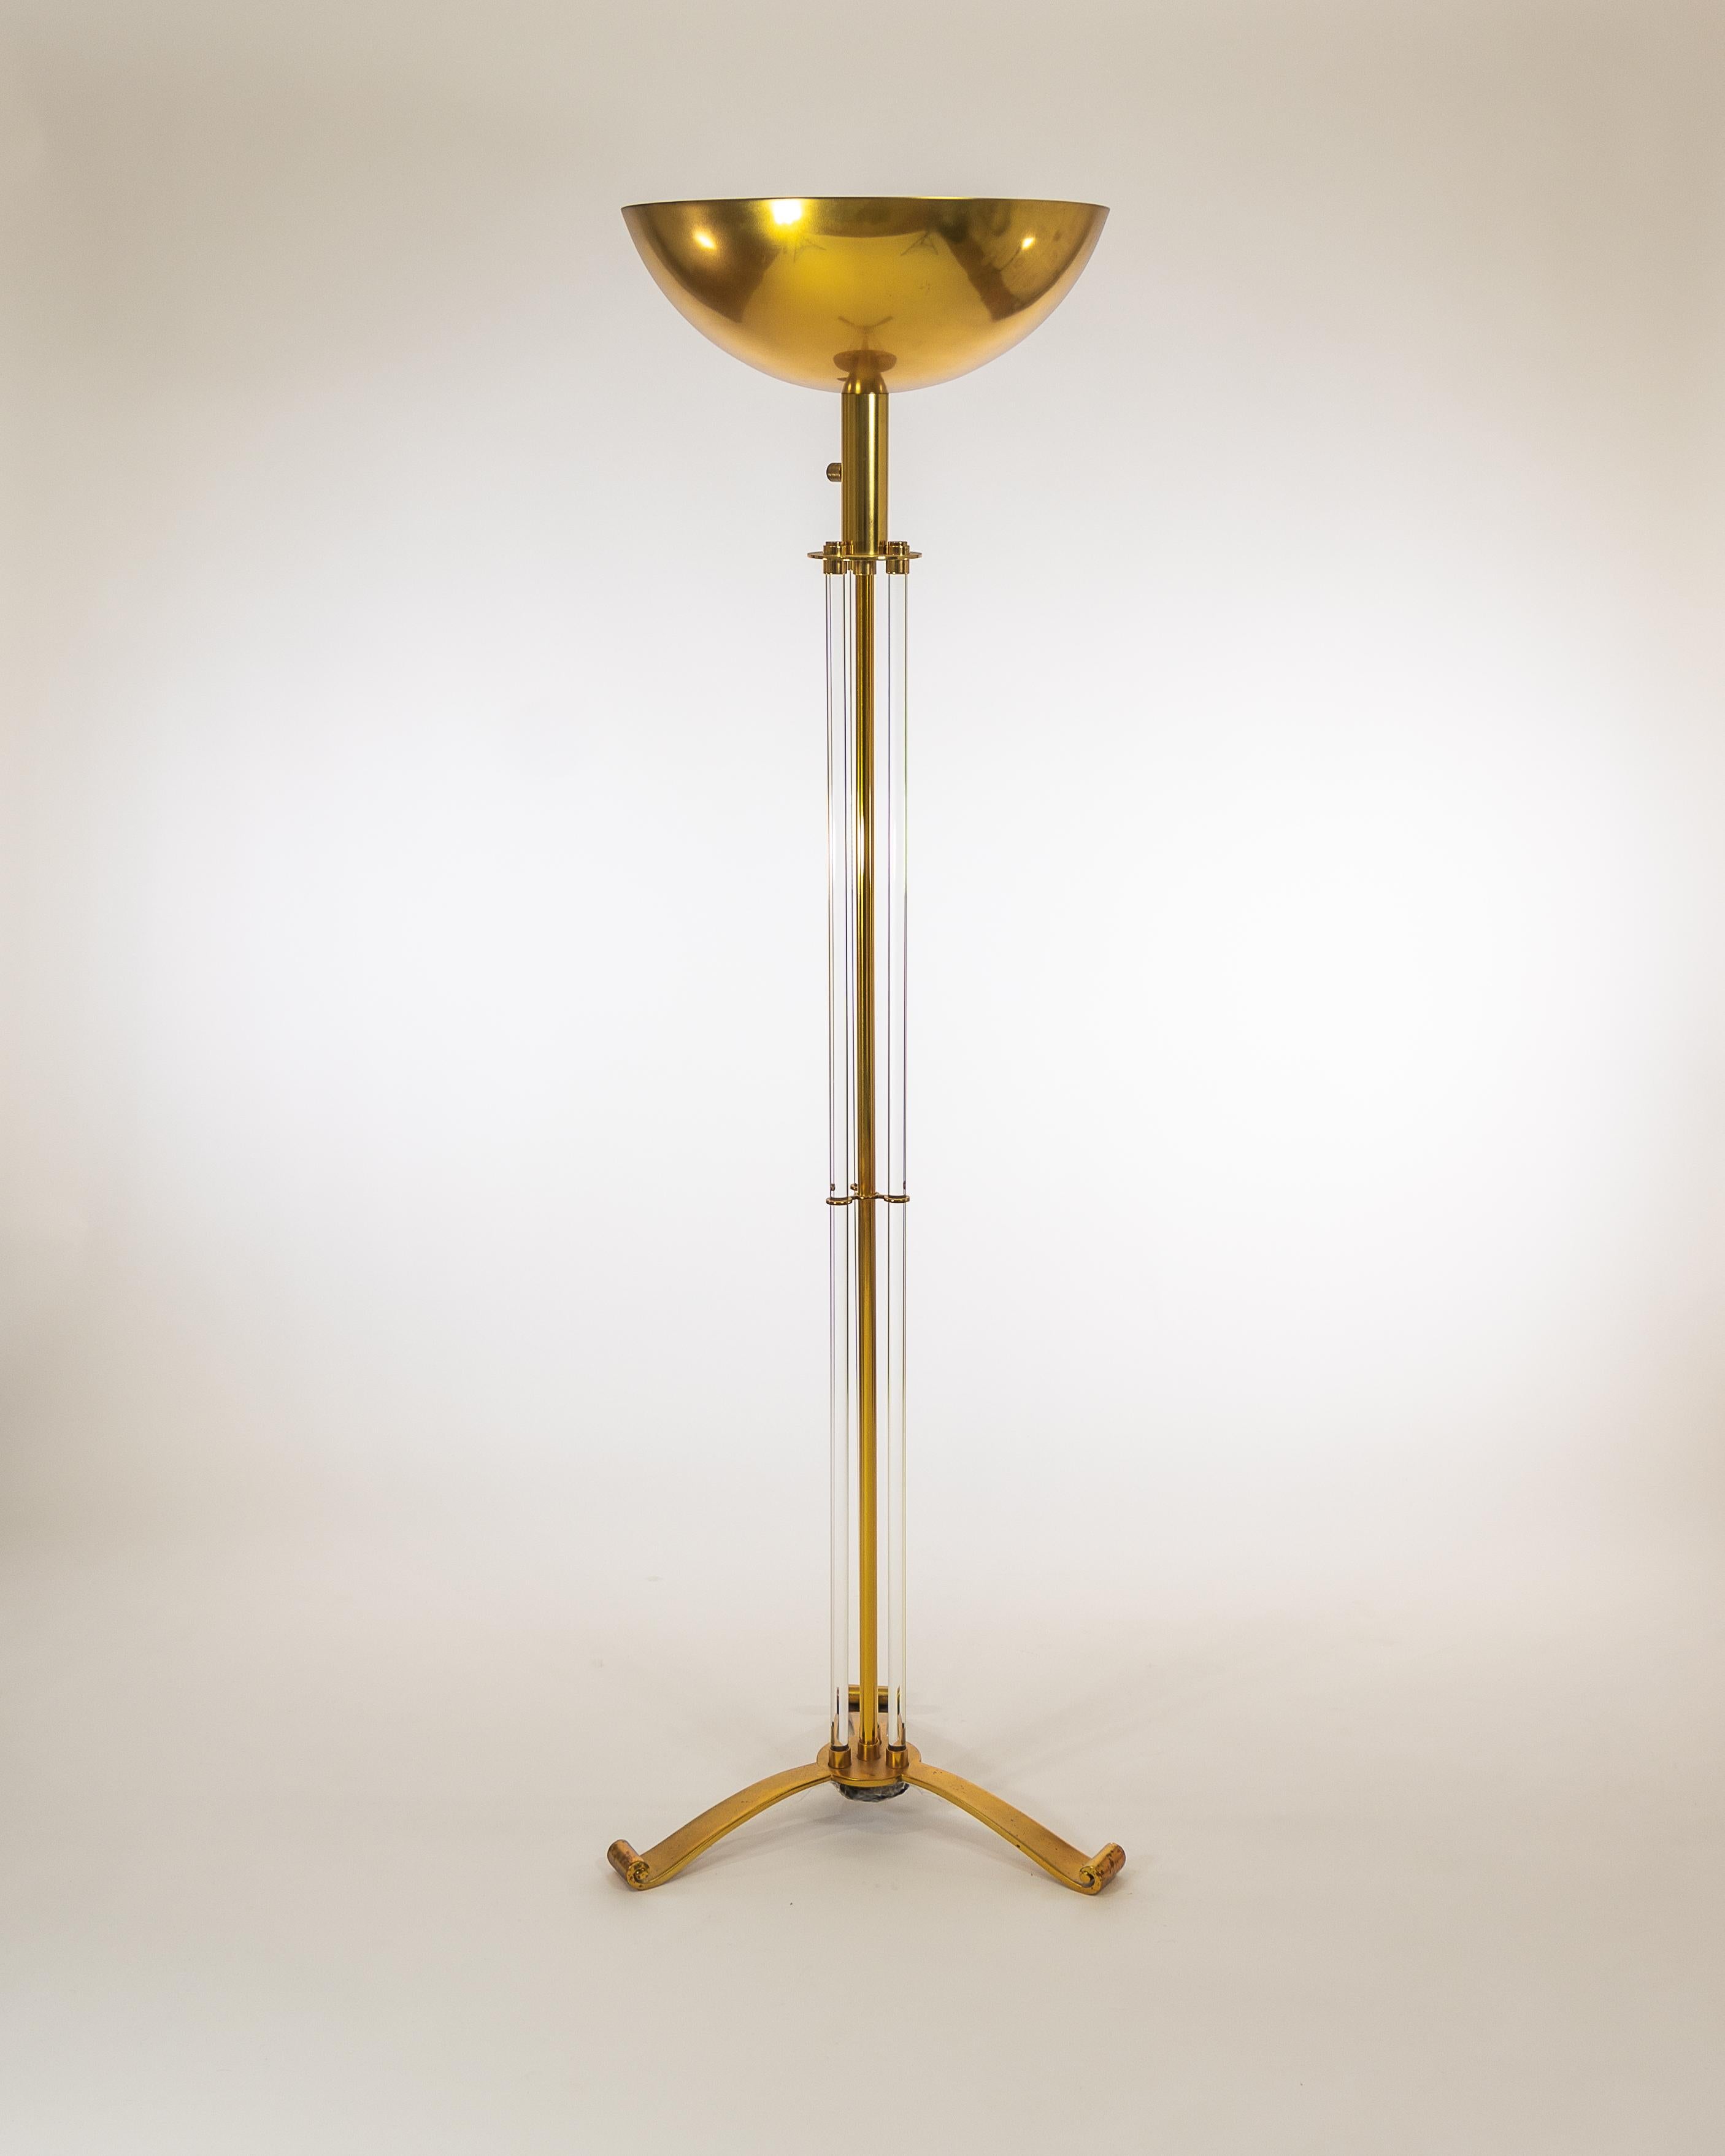 Wunderschöne Stehleuchte von Jules LELEU.
 3 Kristallröhren und Struktur in Messing-Gold-Finish.

Diese von LELEU in den 1950er Jahren entworfene Stehlampe hat einen Messingschirm, in dem die Glühbirnen verborgen sind. 
Französischer Stecker mit